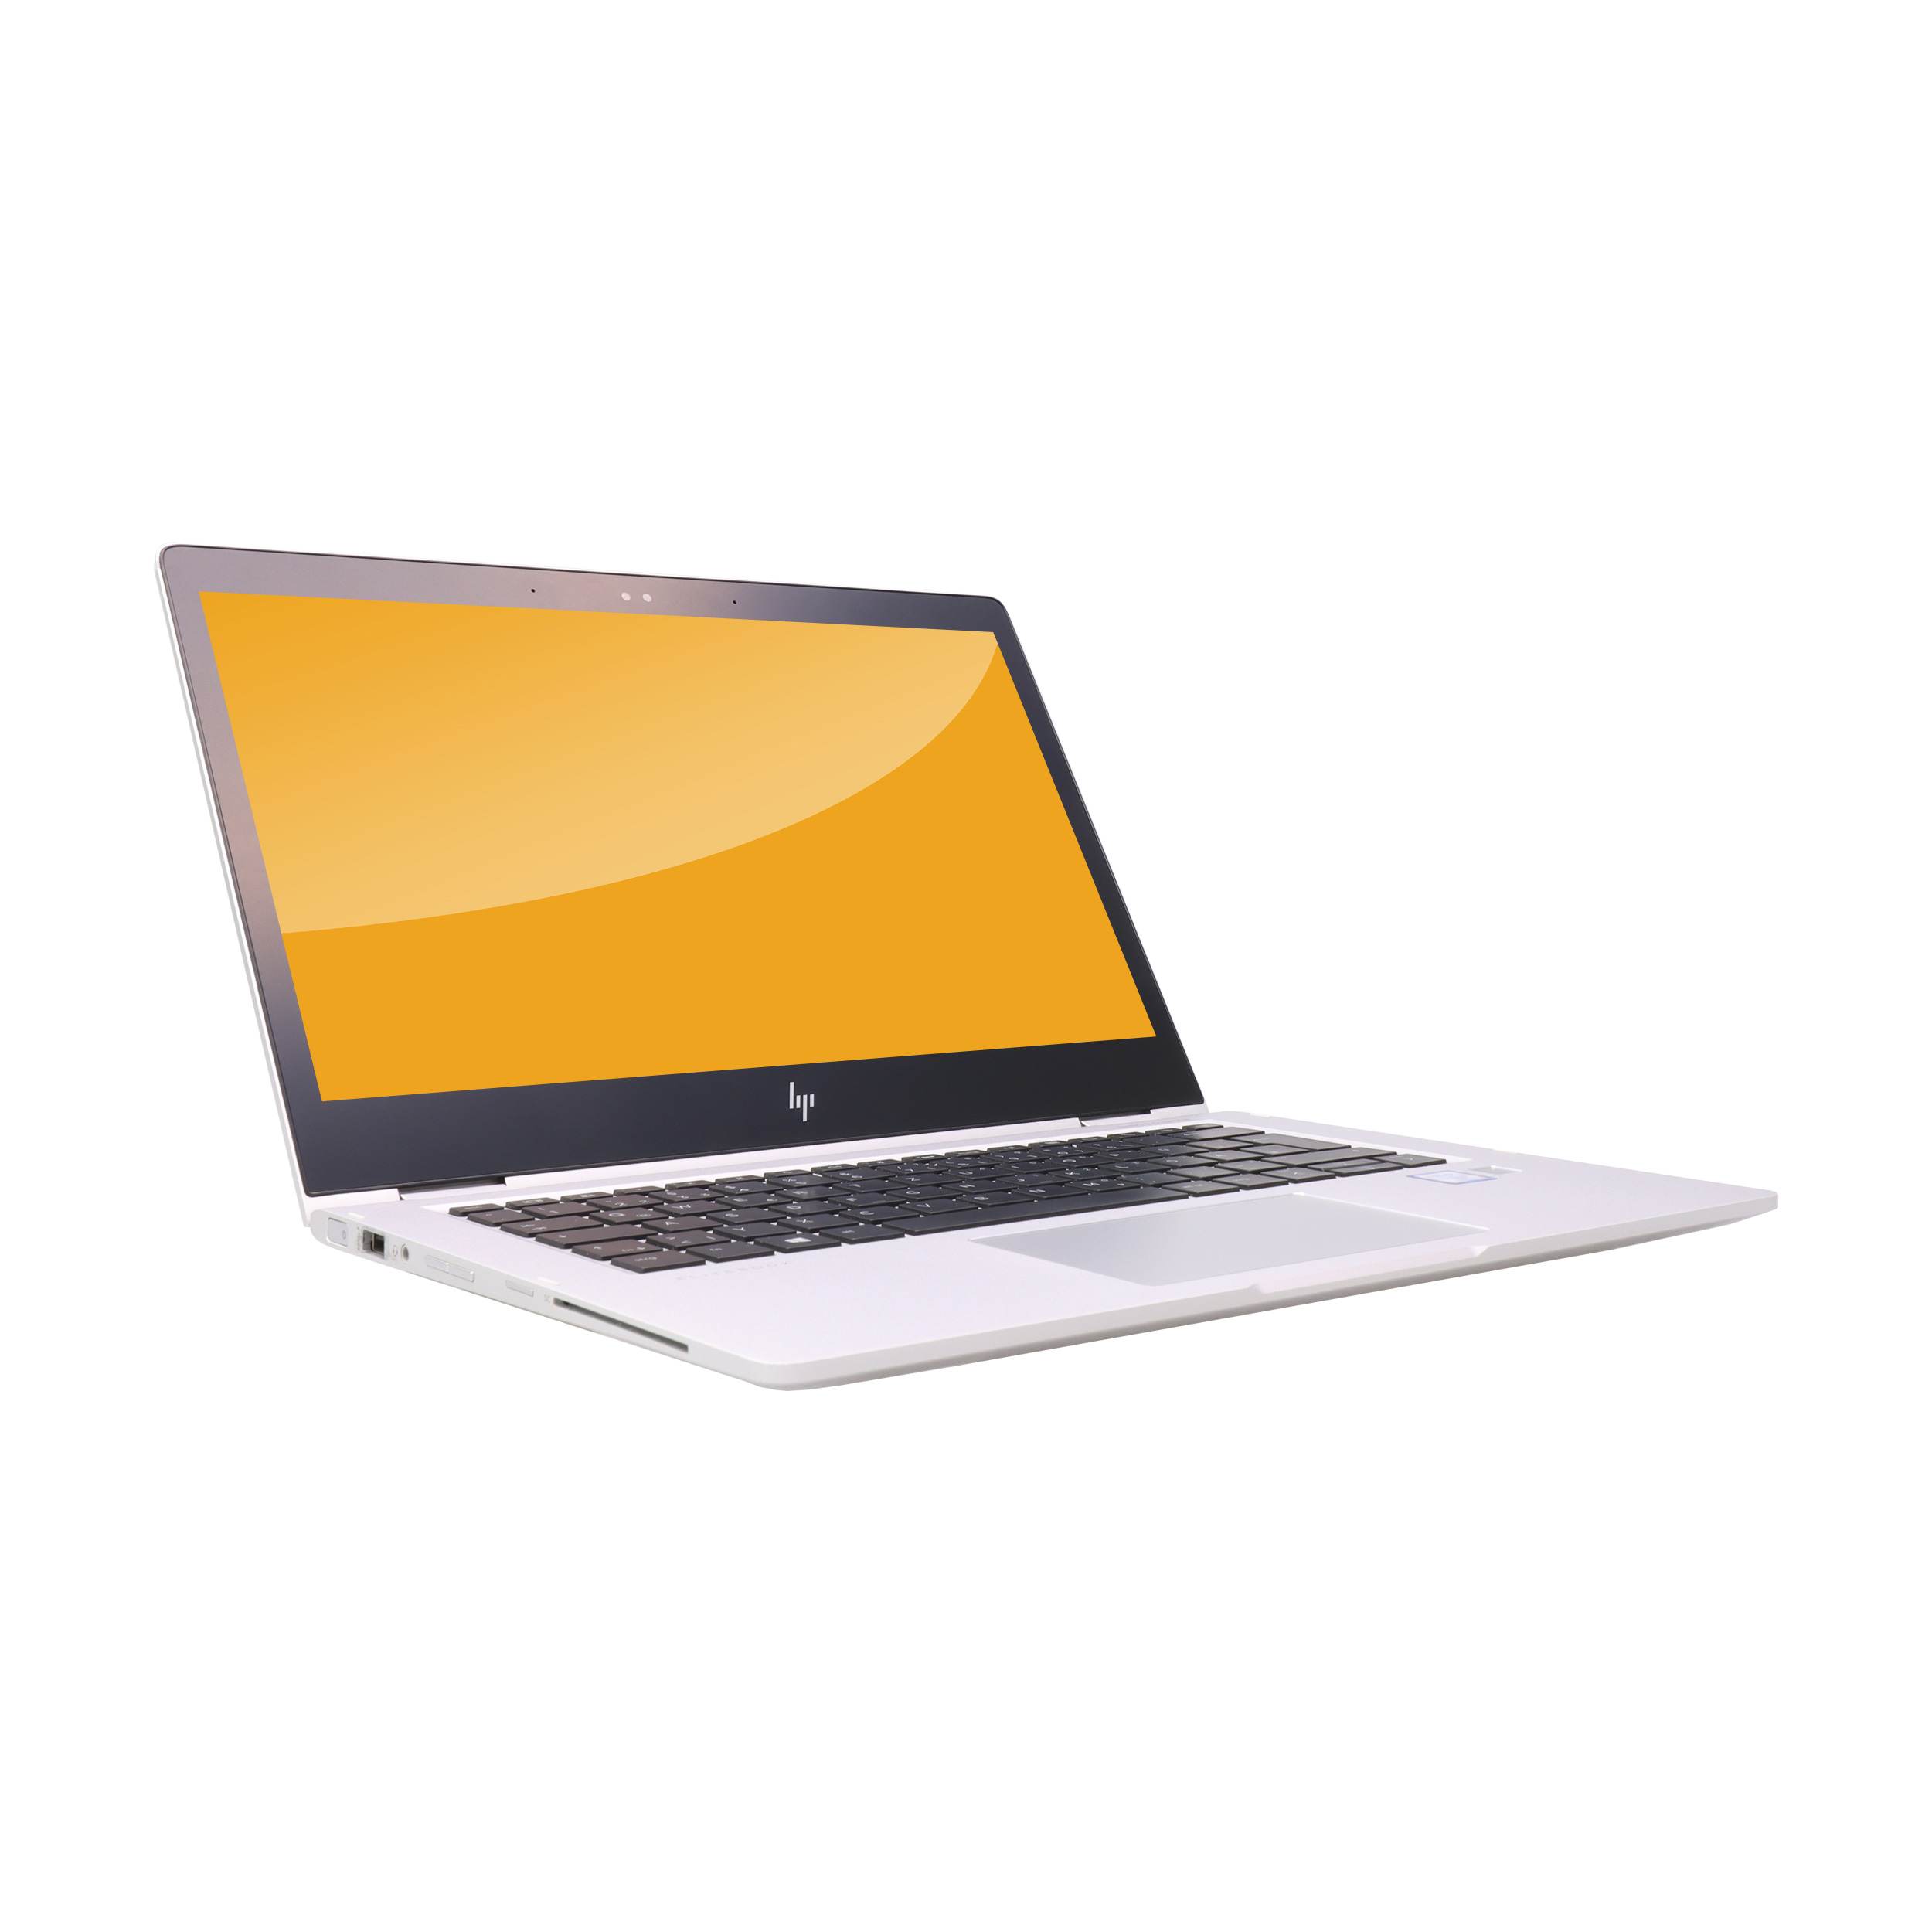 HP - HP EliteBook x360 1030 G2